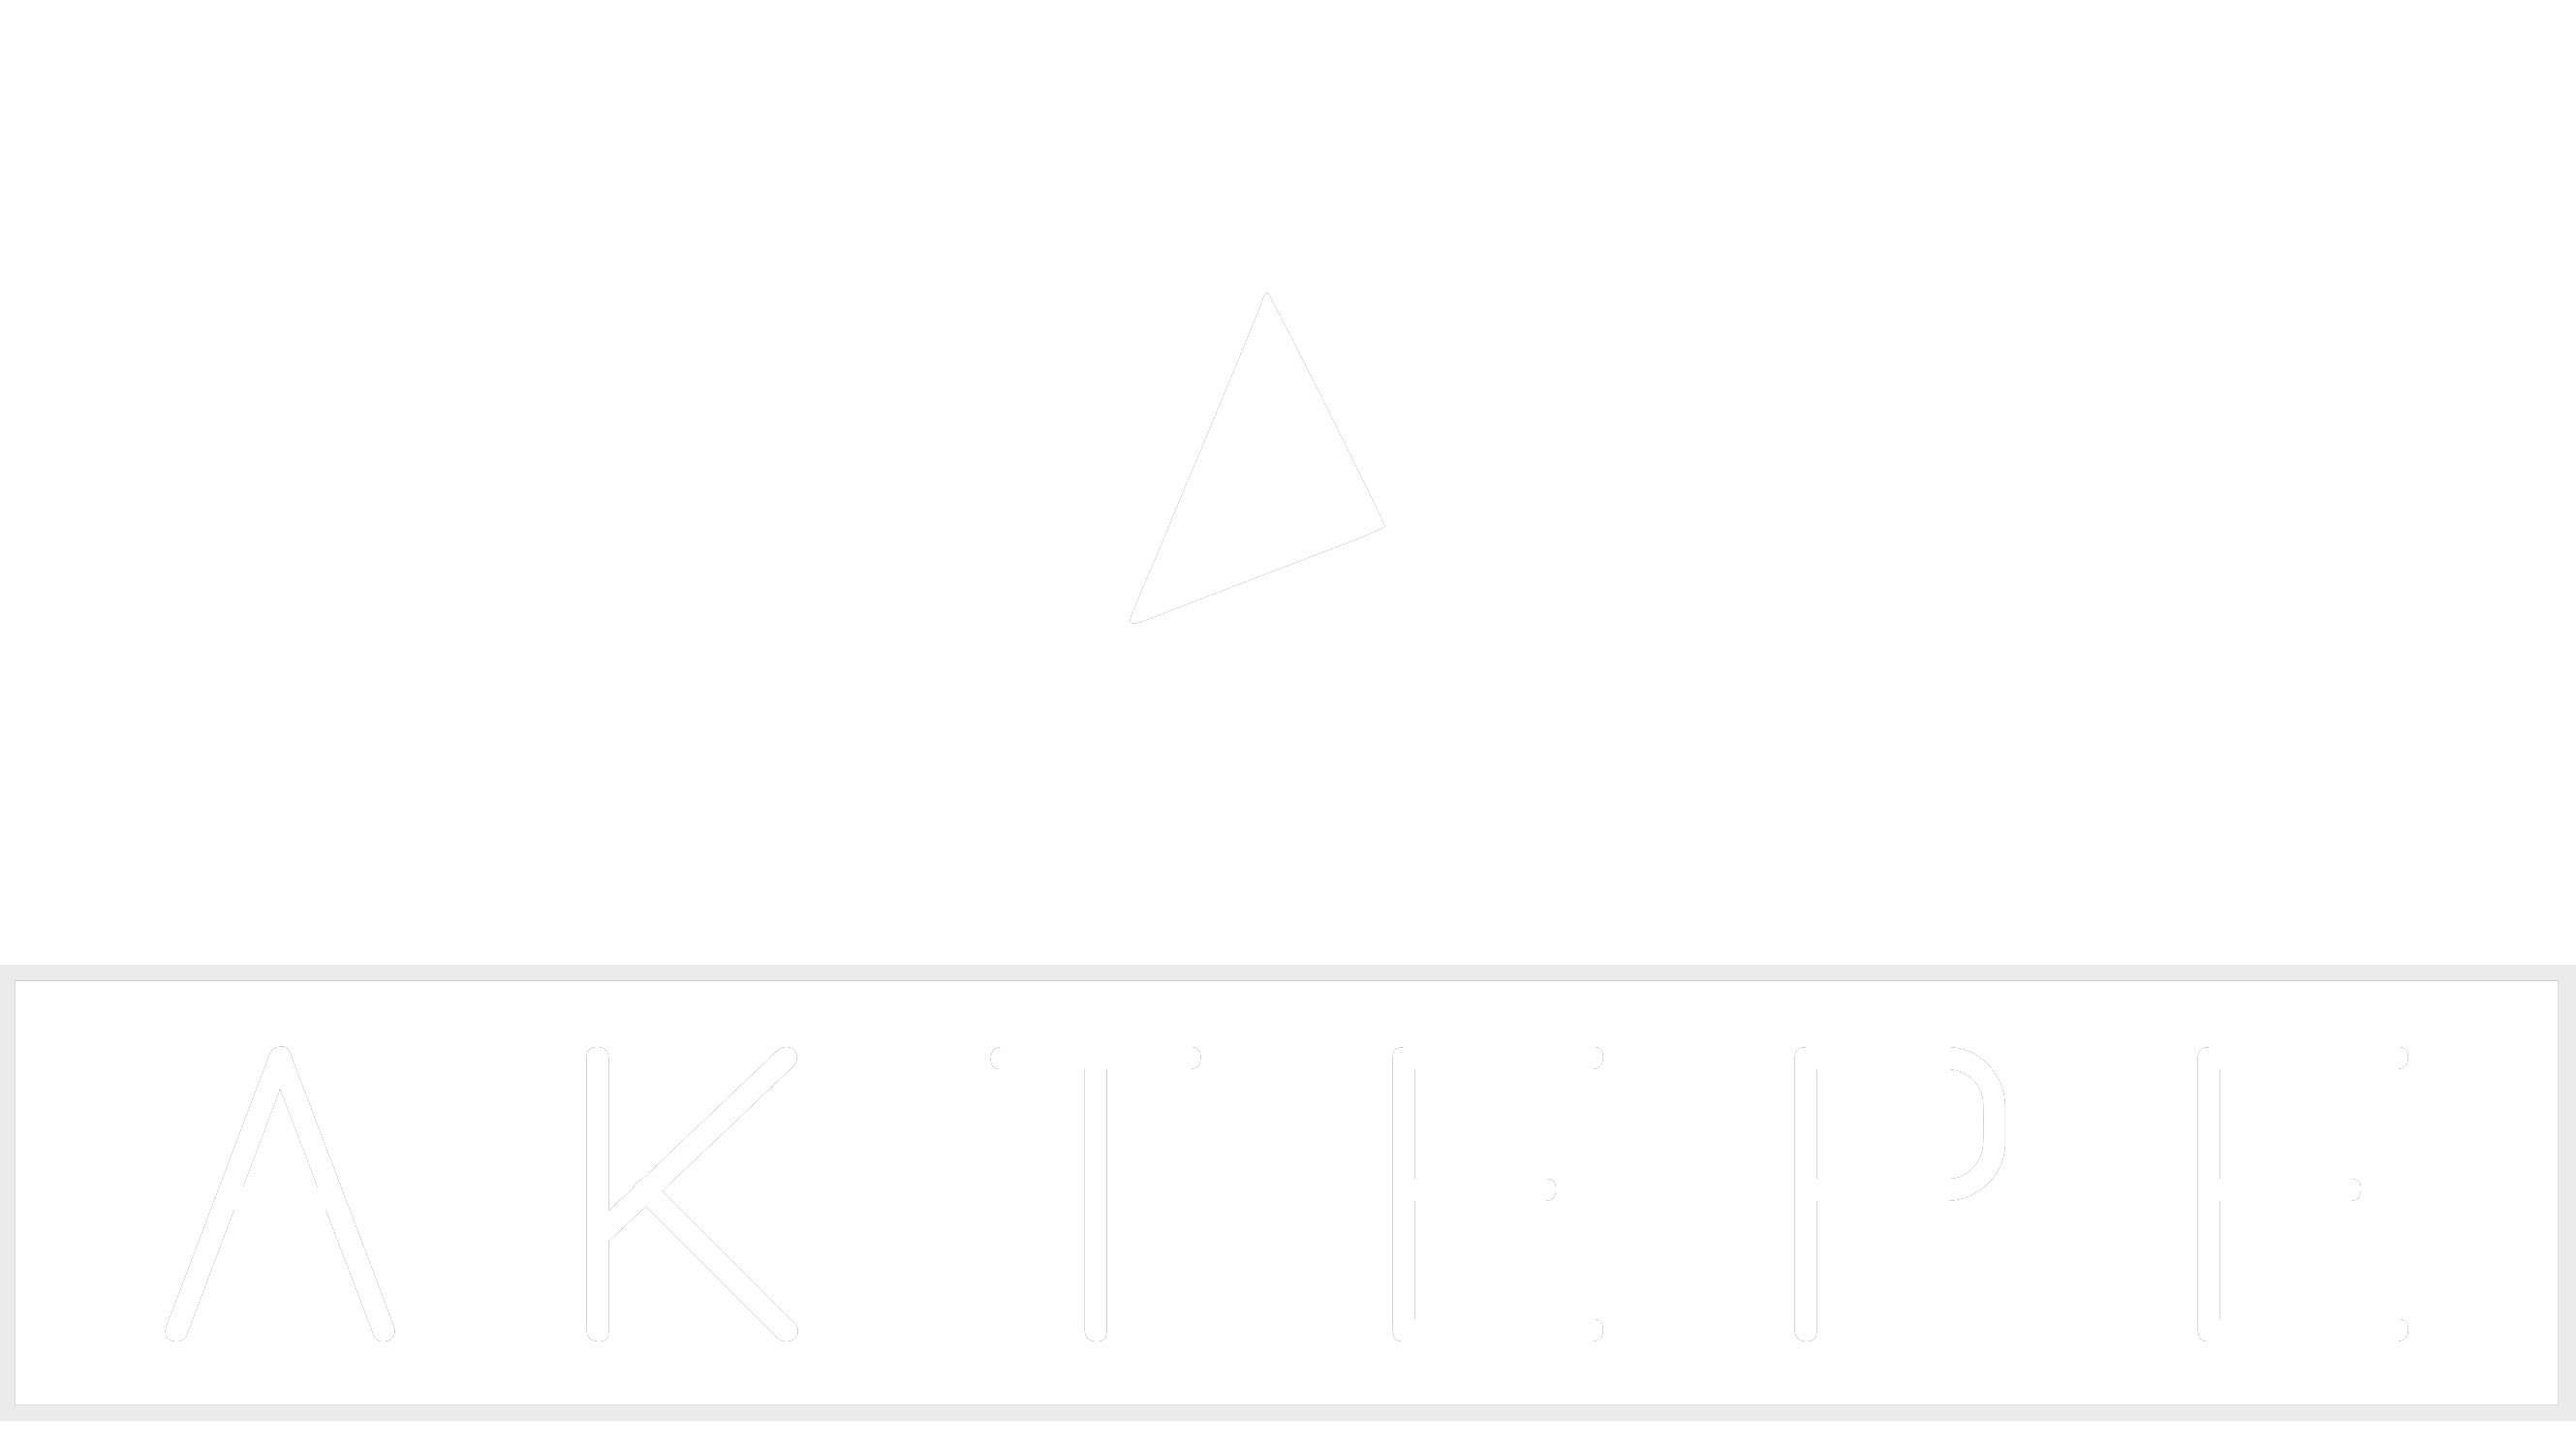 Hoparlör ve Bas Kabinleri - Aktepe Shop - Oto Müzik Görüntü Navigasyon Sistemleri ve Teyp Çerçevesi Satış Merkezi